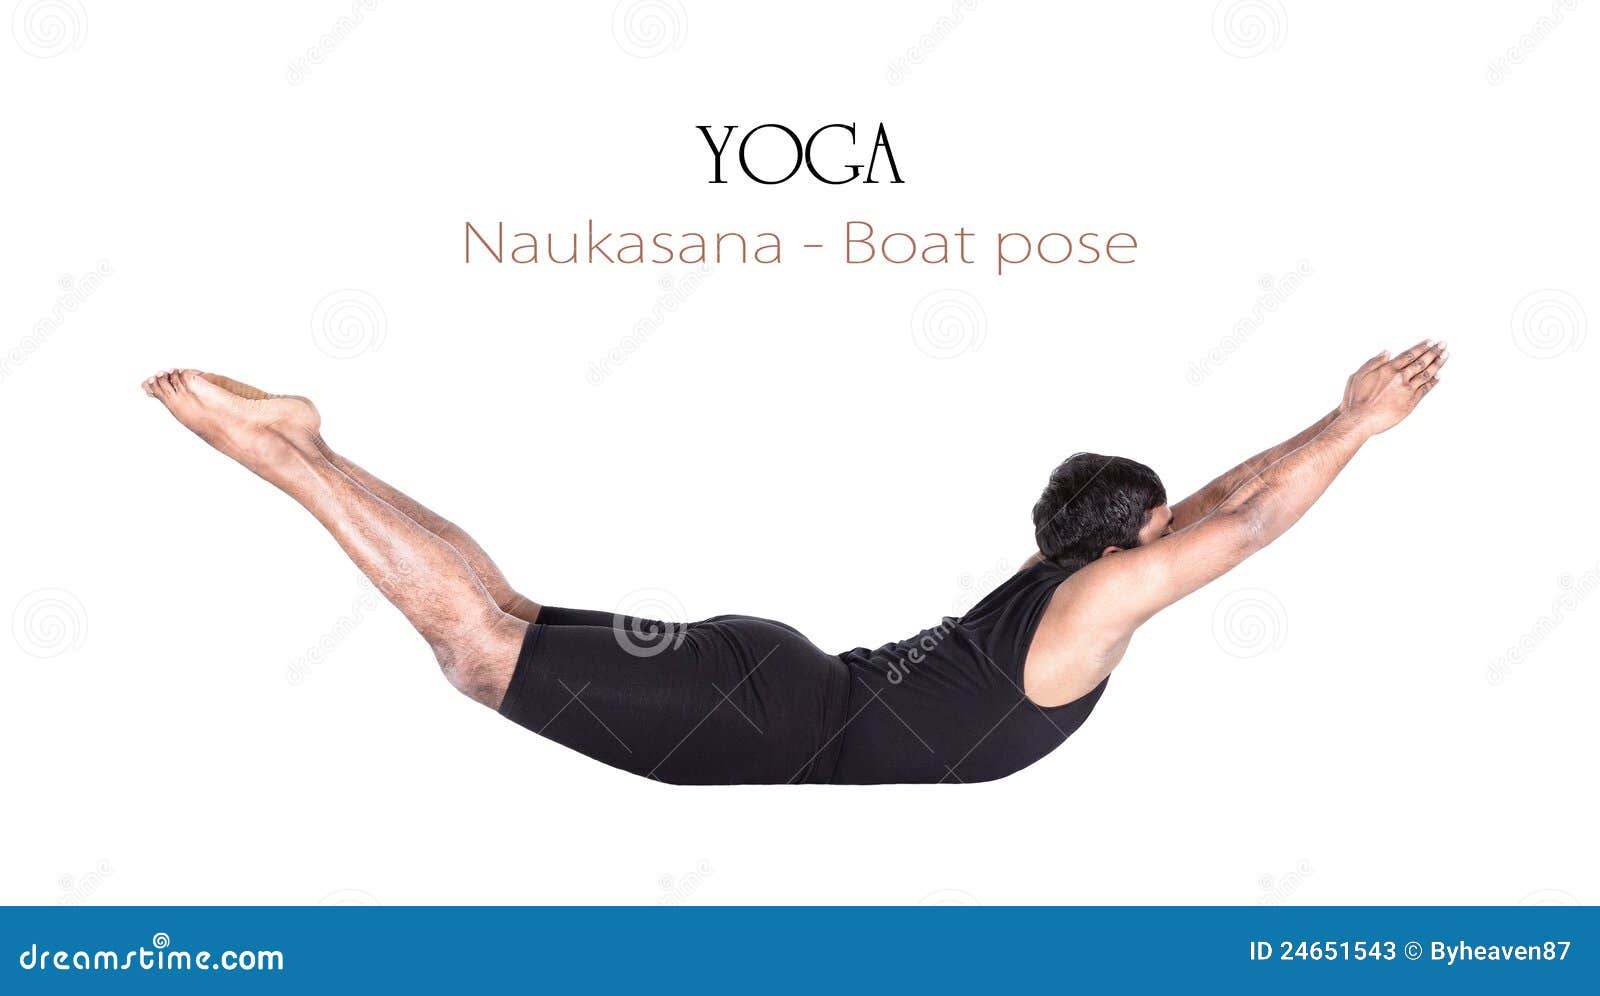 Yog Temple - Naukasana or Boat Pose This asana name comes... | Facebook